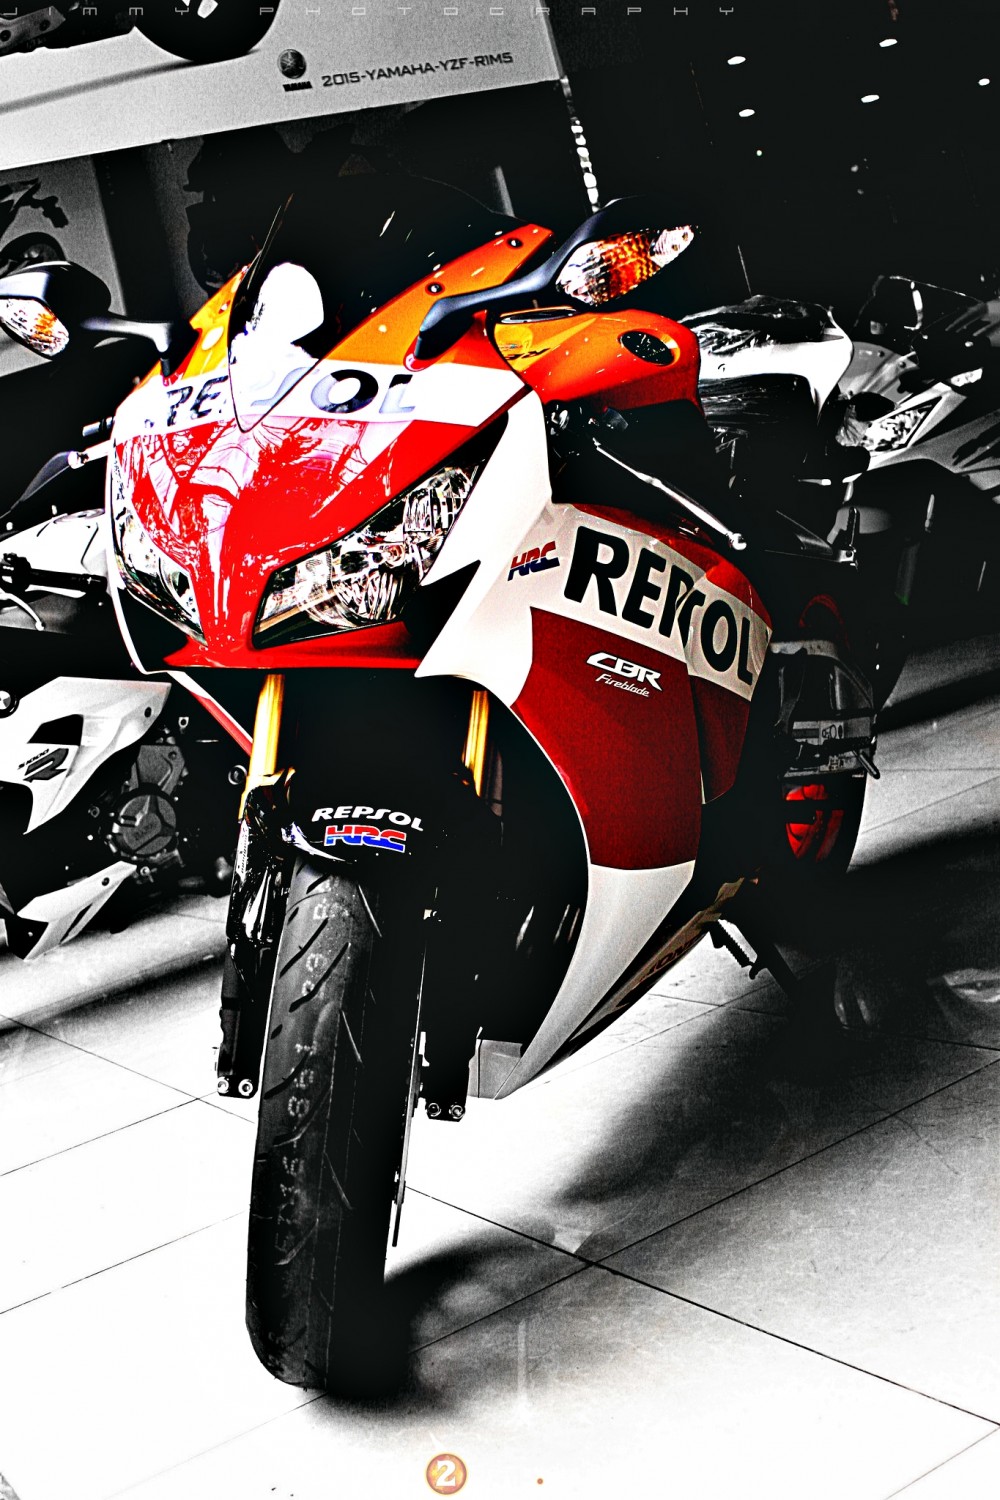 Honda CBR1000RR phien ban Repsol 2015 - 4